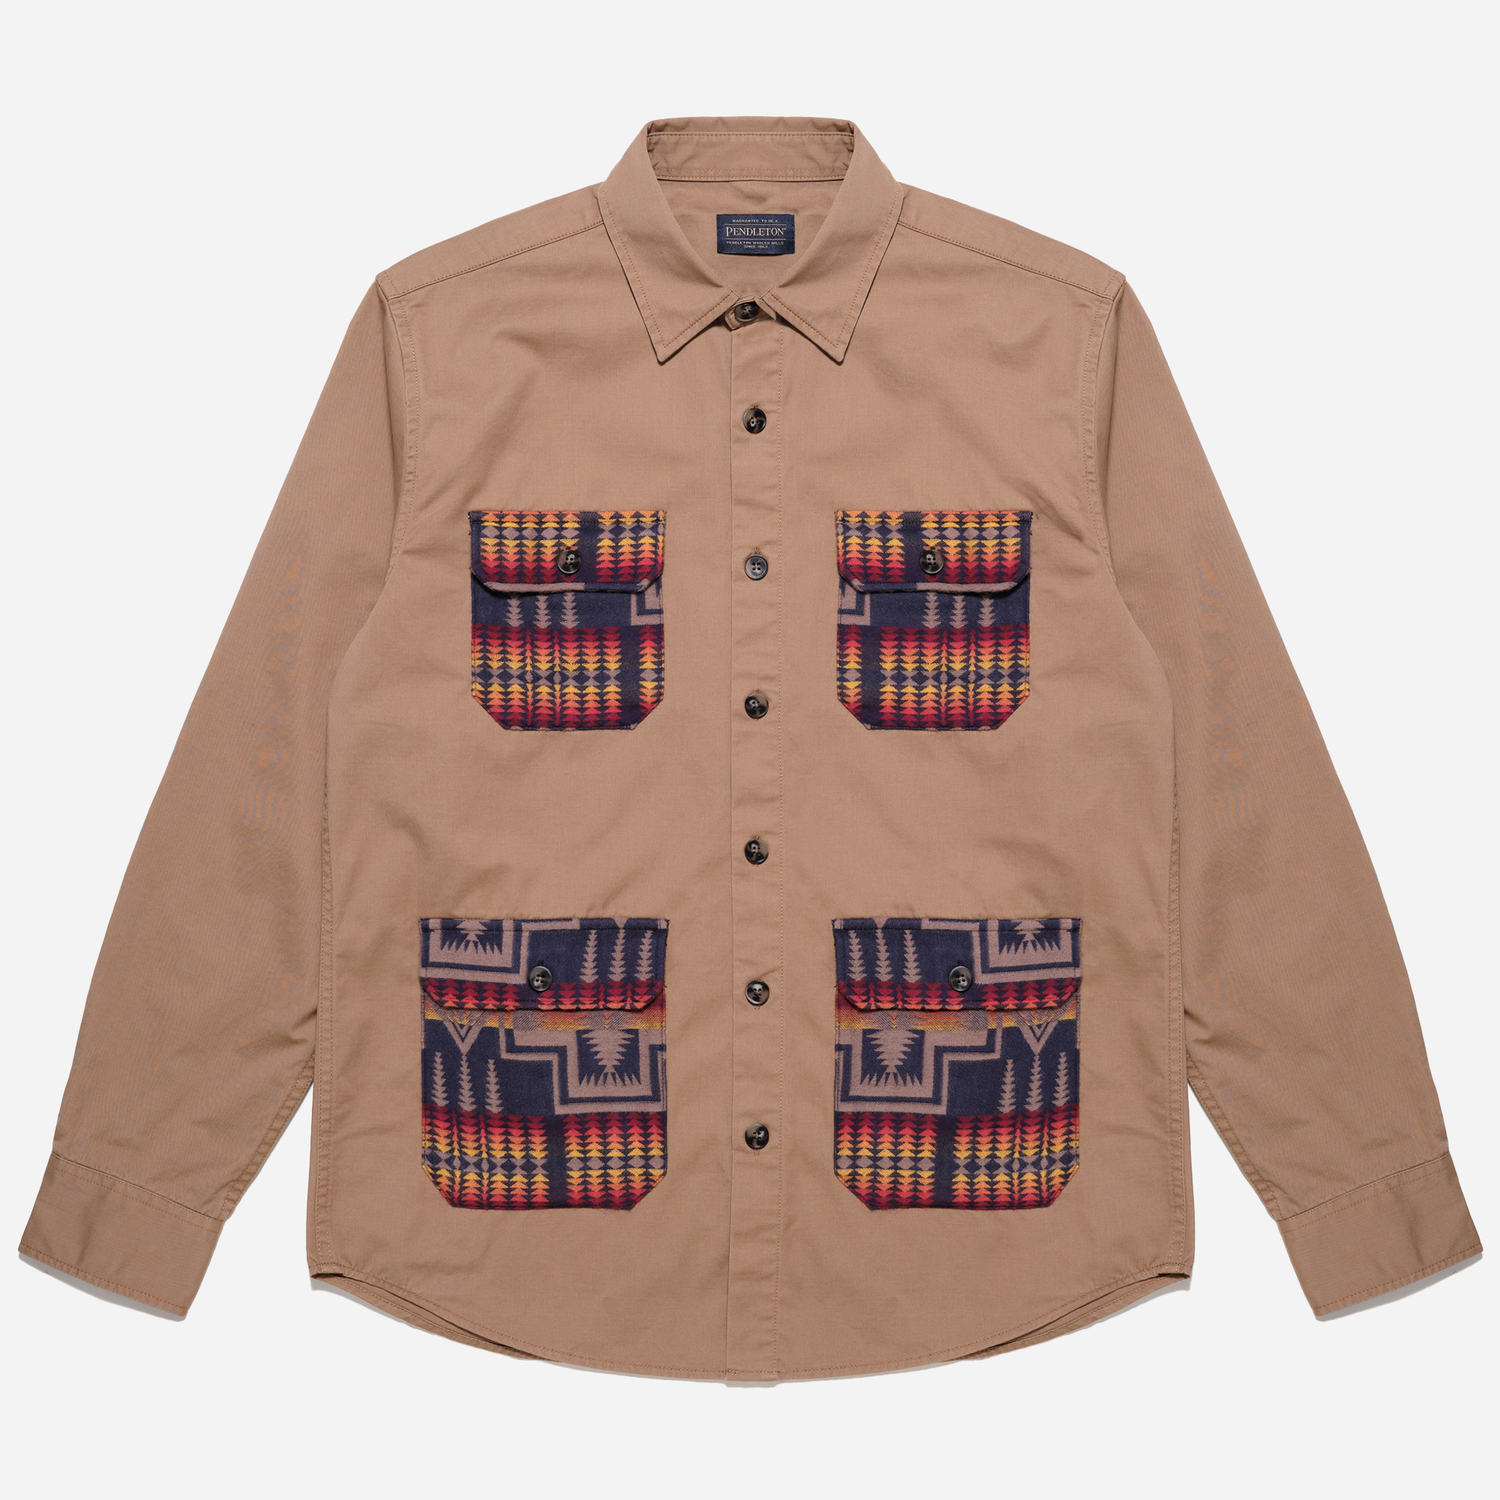 Hunting Explorer Shirt (The Harding Capsule) – Khaki/Harding